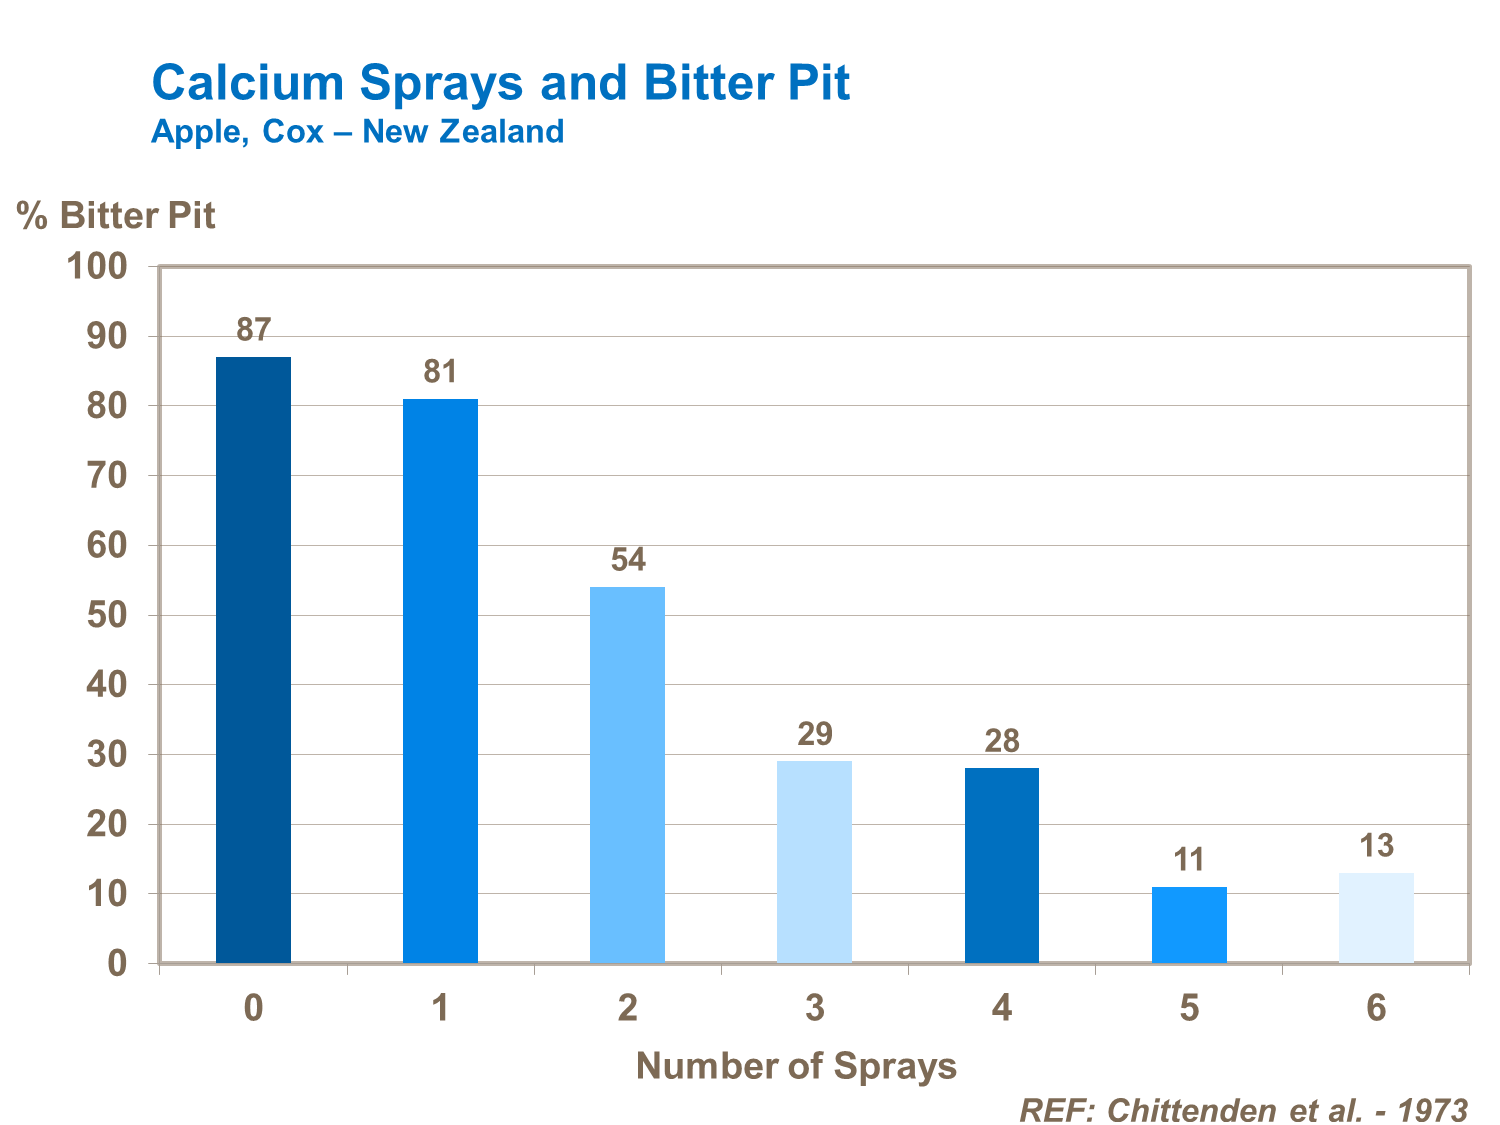 Calcium sprays and bitter pit